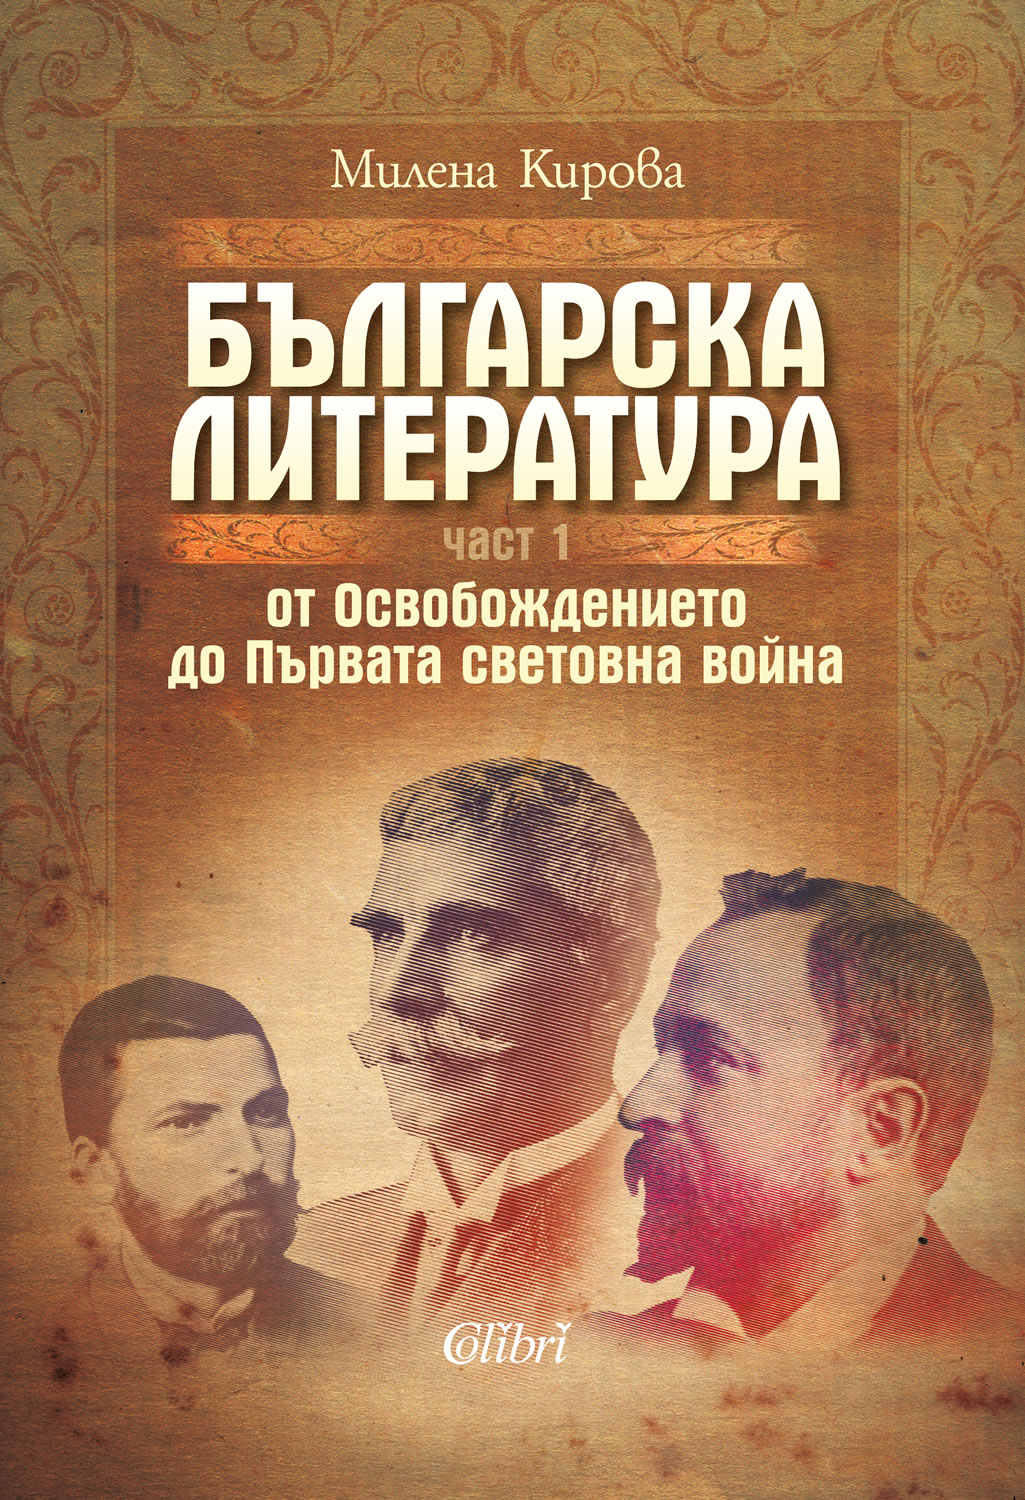 Cover-Bylgarska-literatura